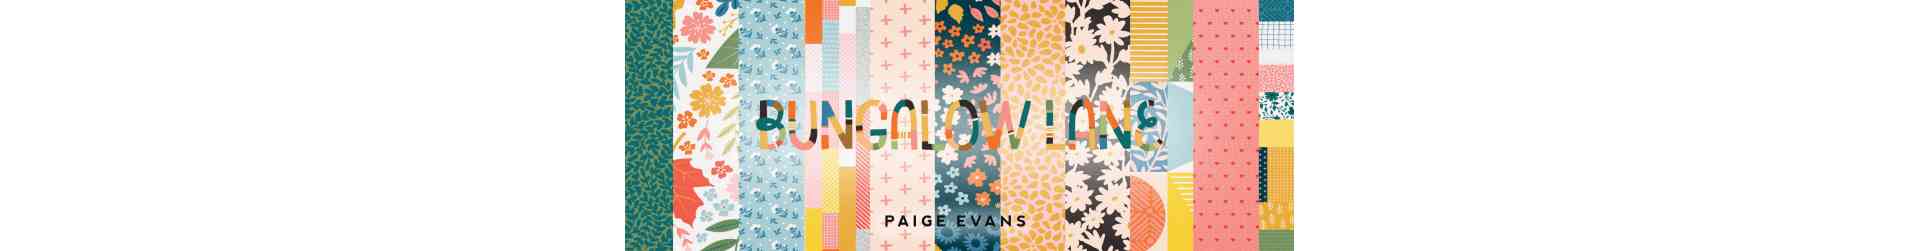 Bungalow Lane - Paige Evans